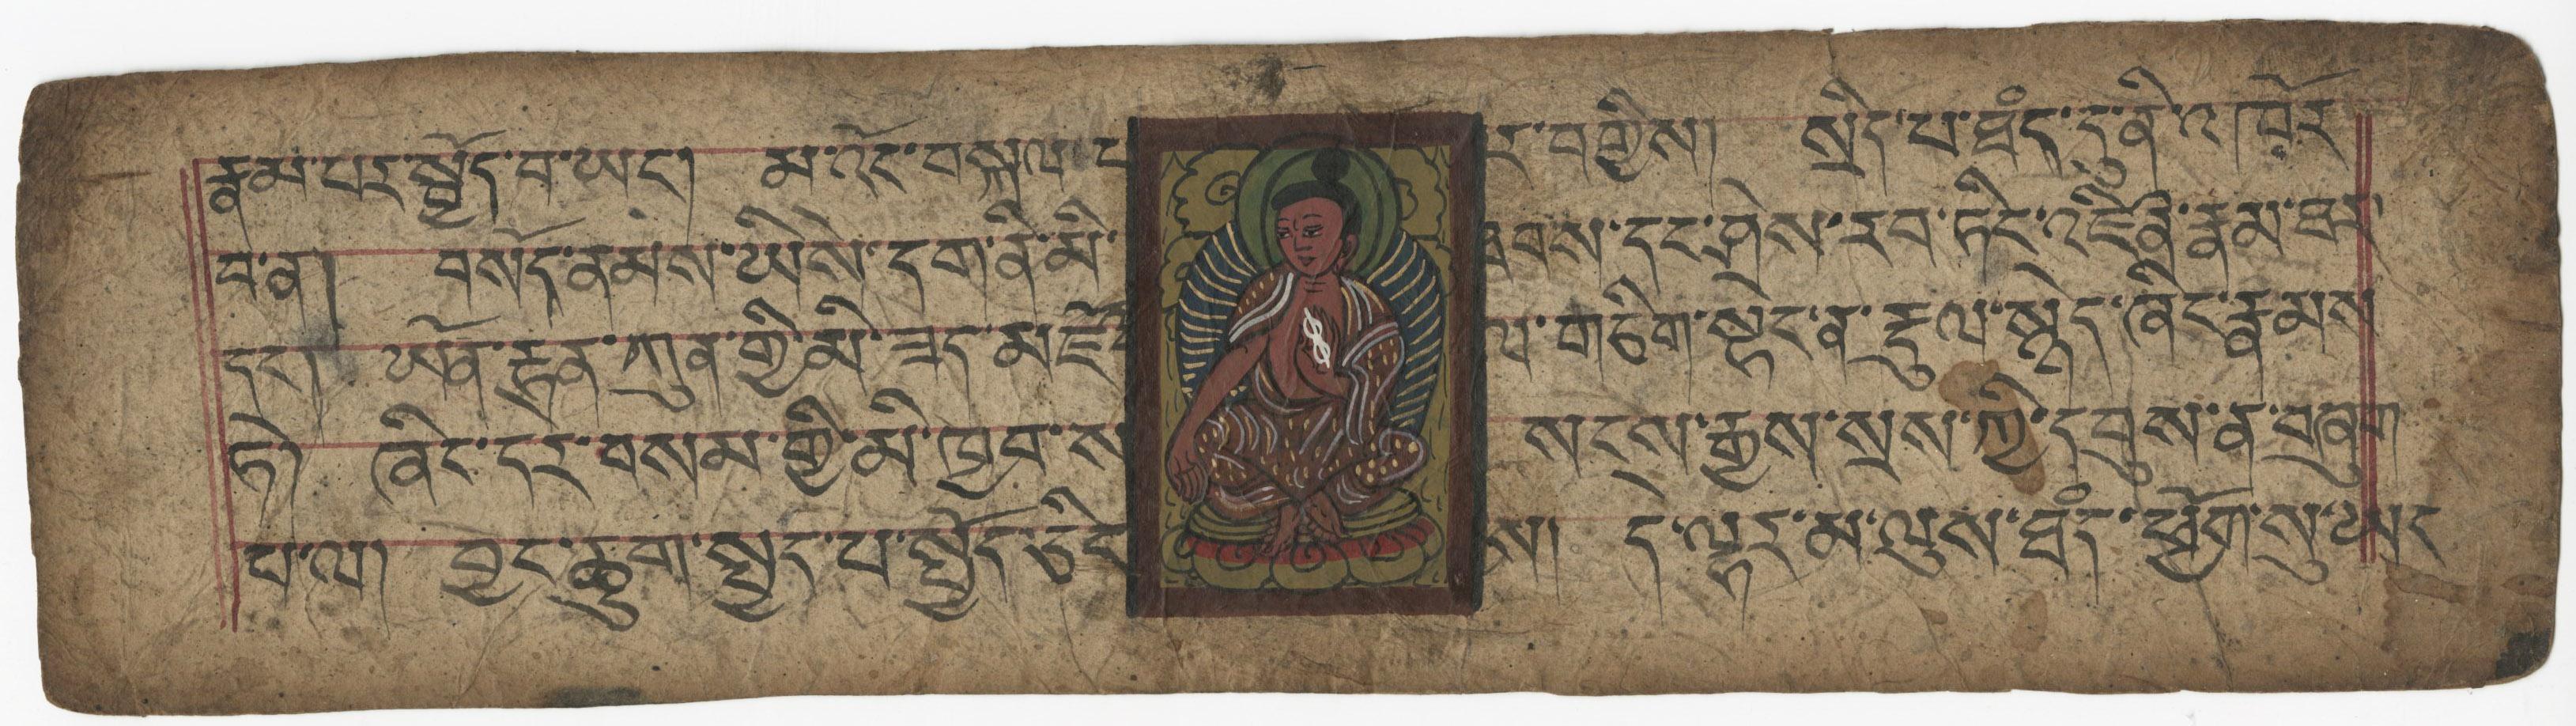 Dharma Prayer Buch Manuscript Folio – Art von Unknown Tibetan